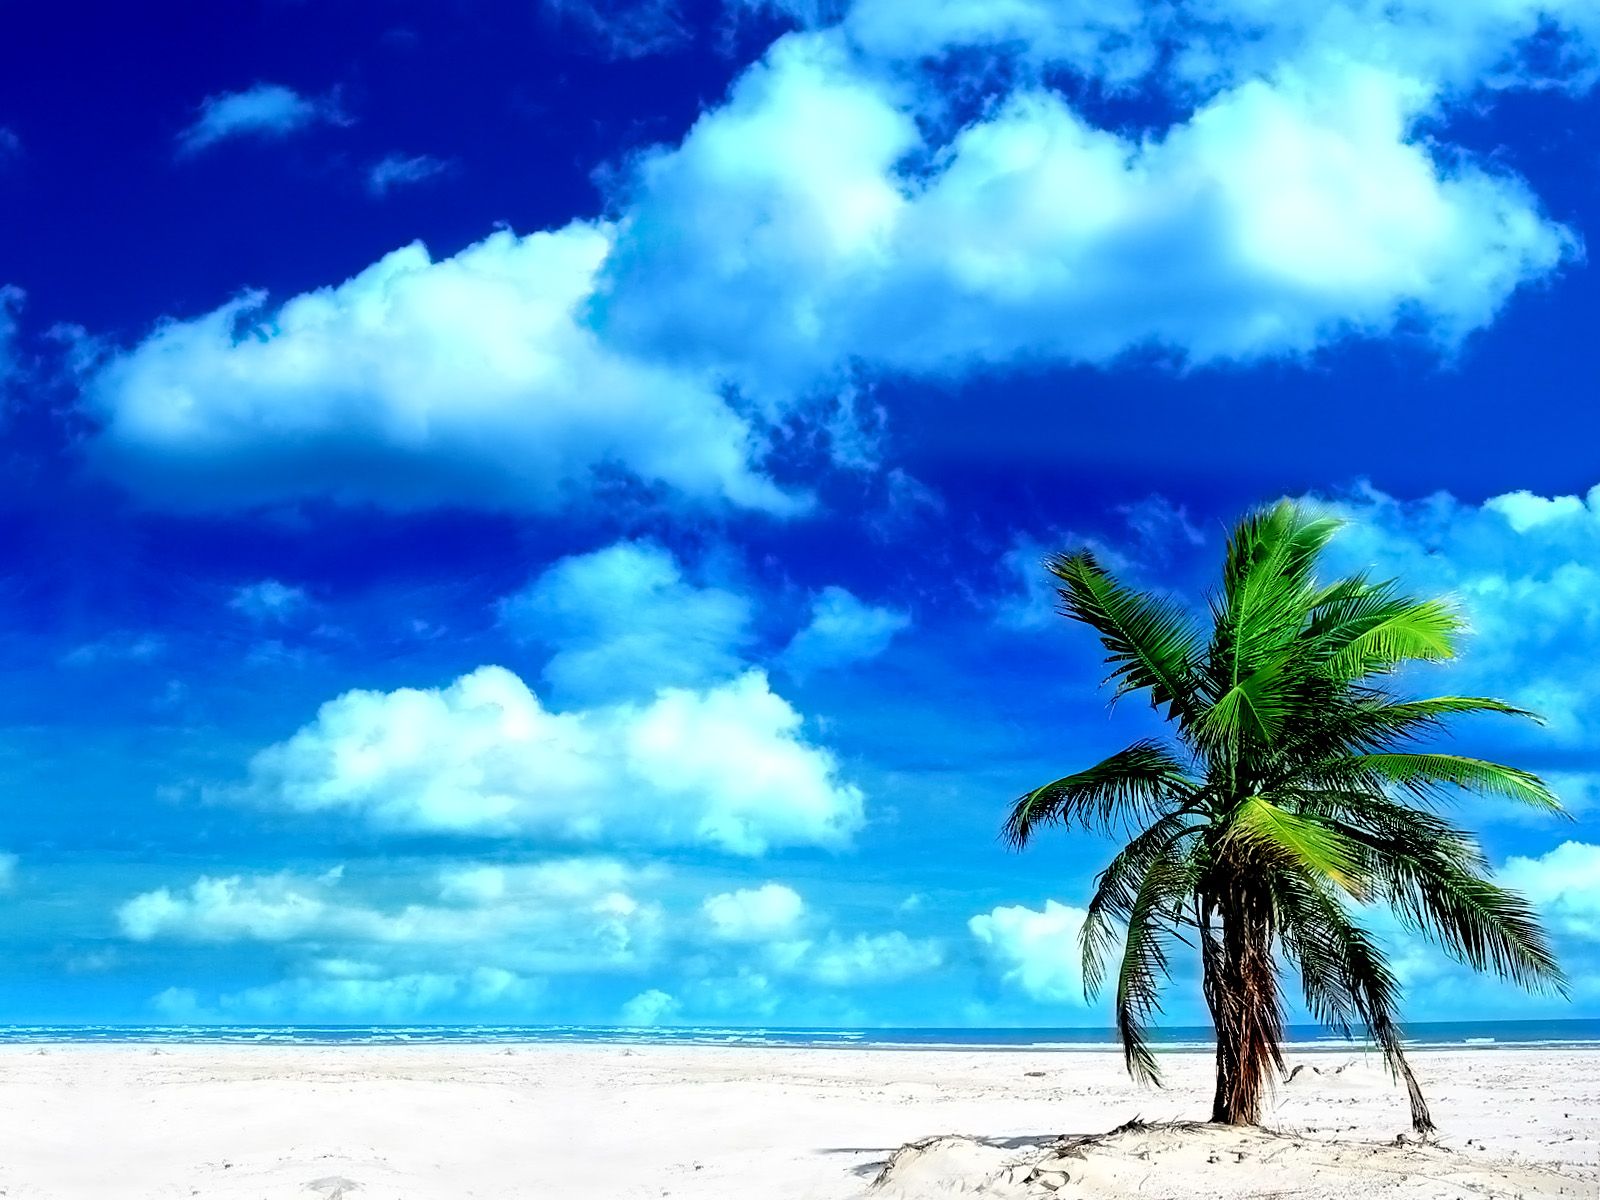 Скачать обои бесплатно Природа, Облака, Пляж, Пальмы, Тропический, Земля/природа картинка на рабочий стол ПК